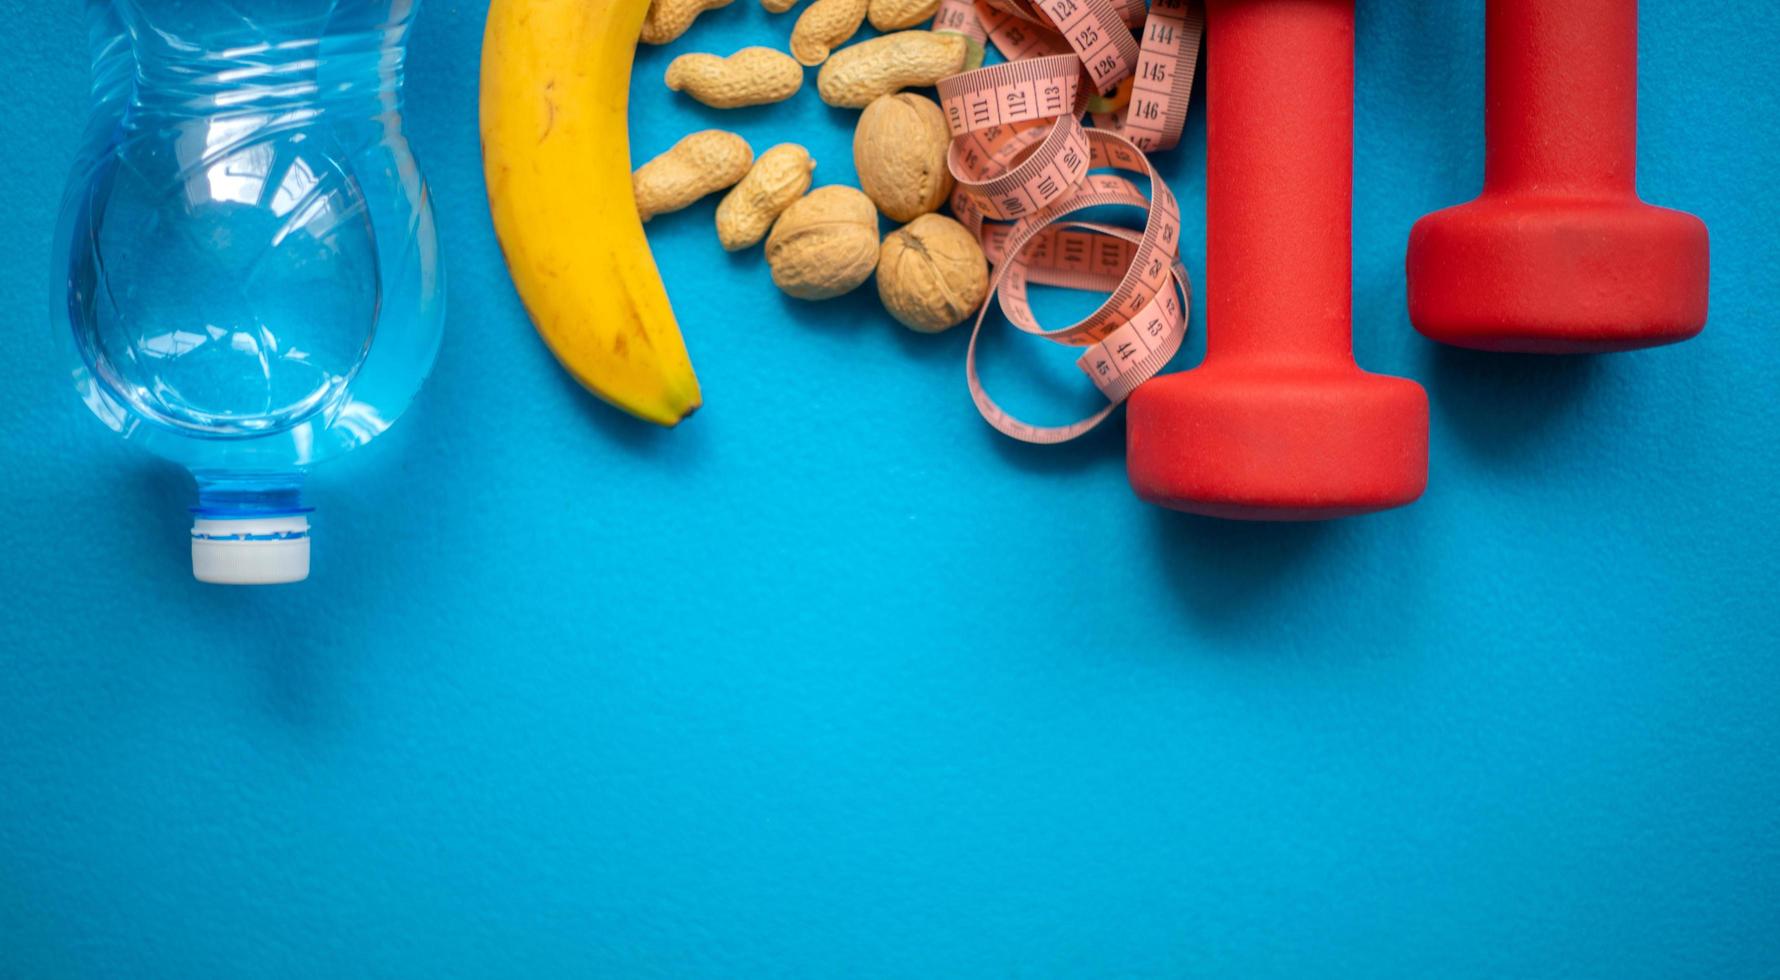 banana, noci, acqua, metro a nastro e manubri su sfondo blu. cibo e attrezzature per il fitness per uno stile di vita sano foto